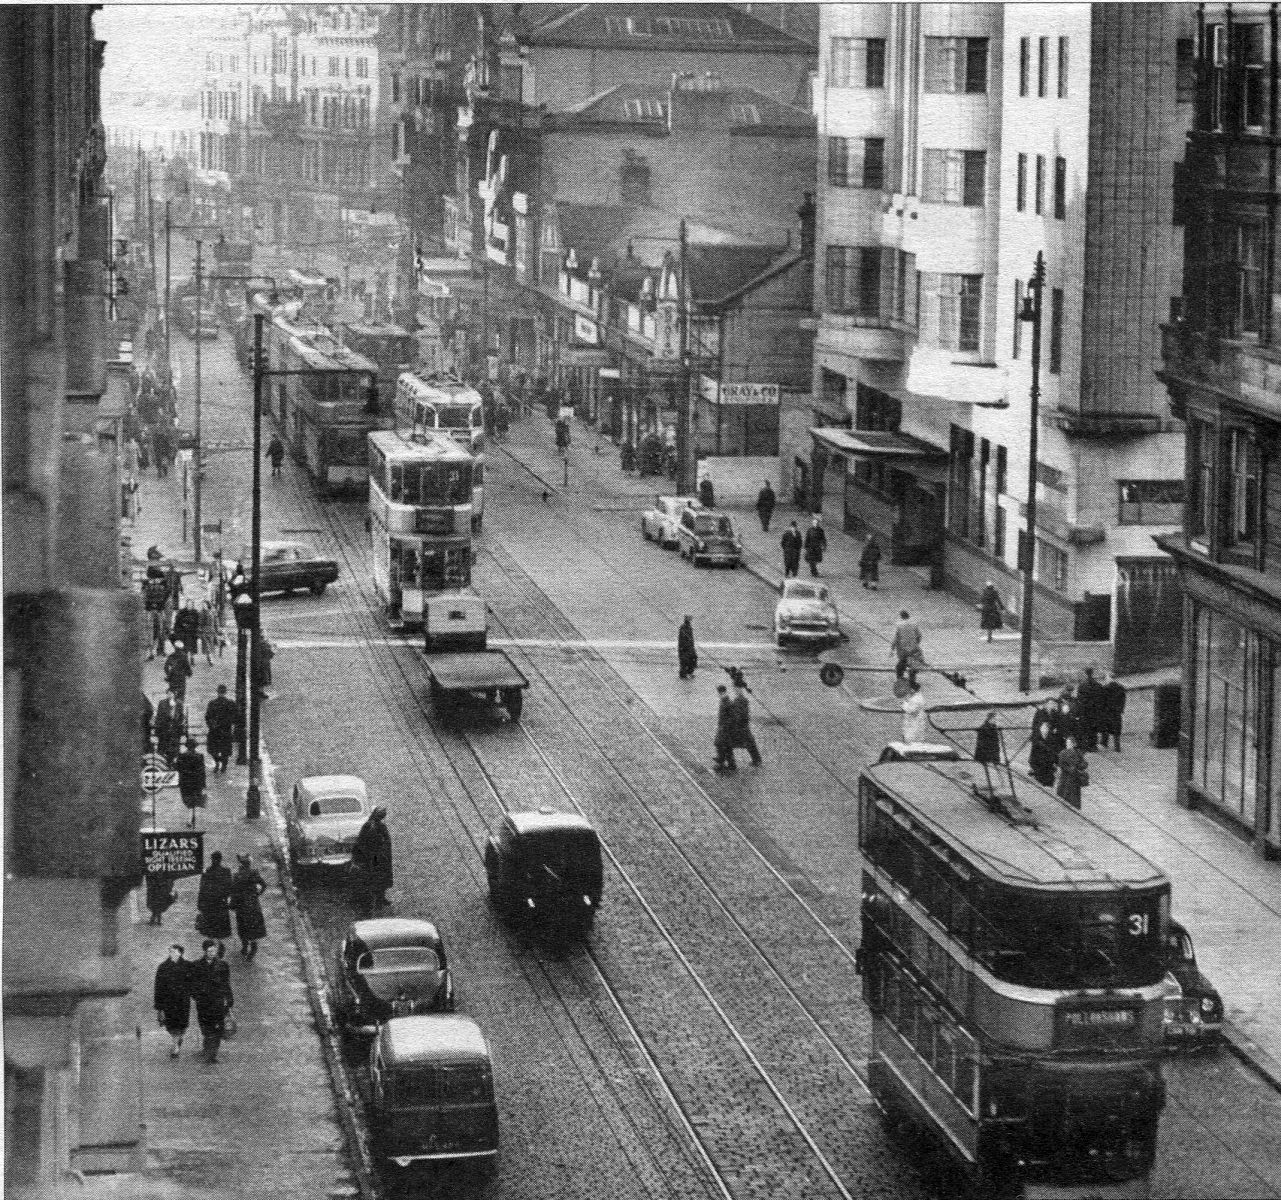 Glasgow: Then - Sauchiehall Street in 1956